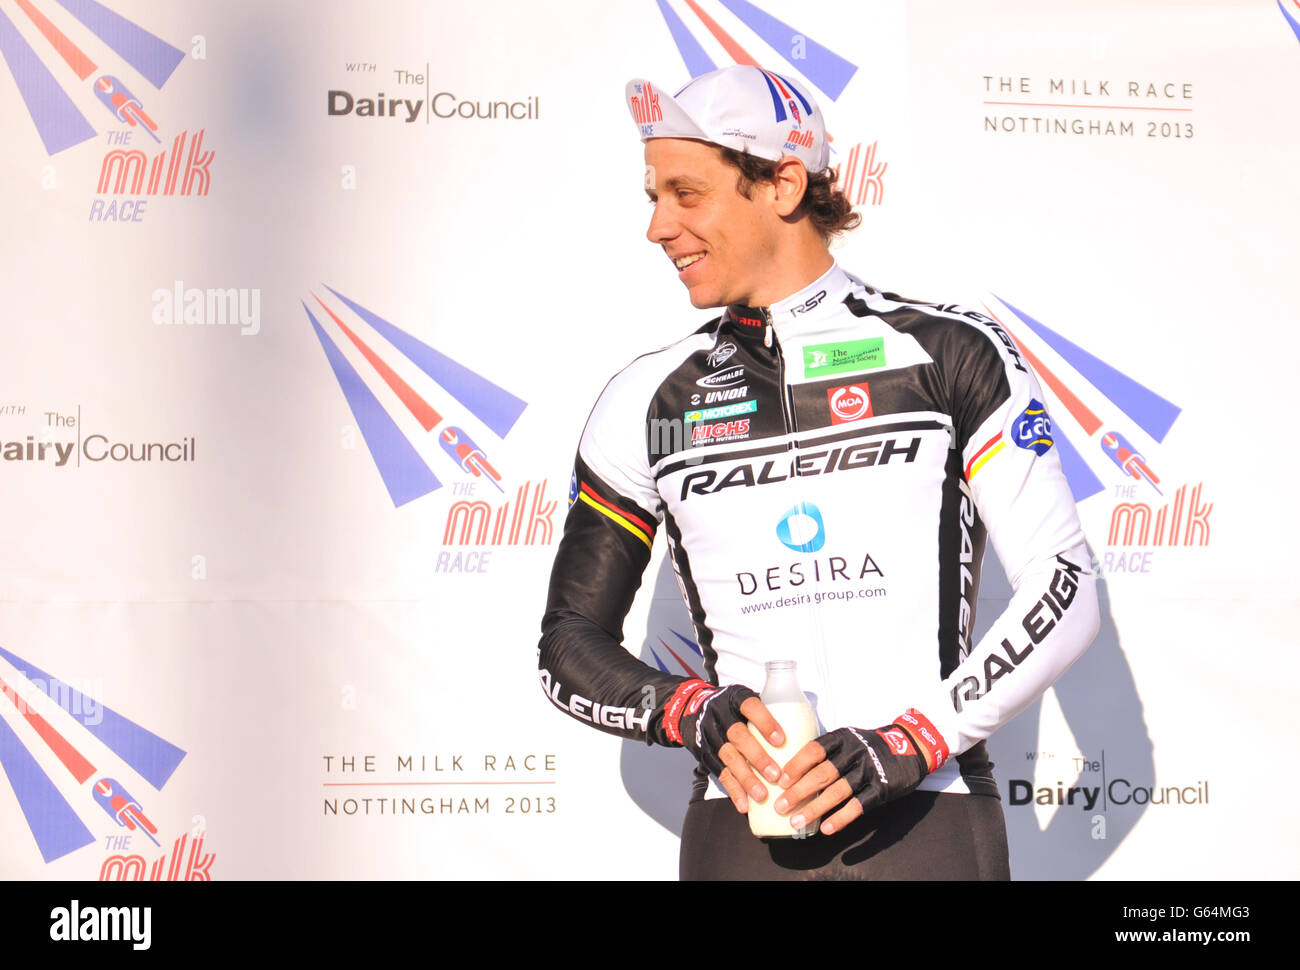 Alexandre Blain vom Team Raleigh feiert beim Milk Race durch das Stadtzentrum von Nottingham den zweiten Platz. Stockfoto